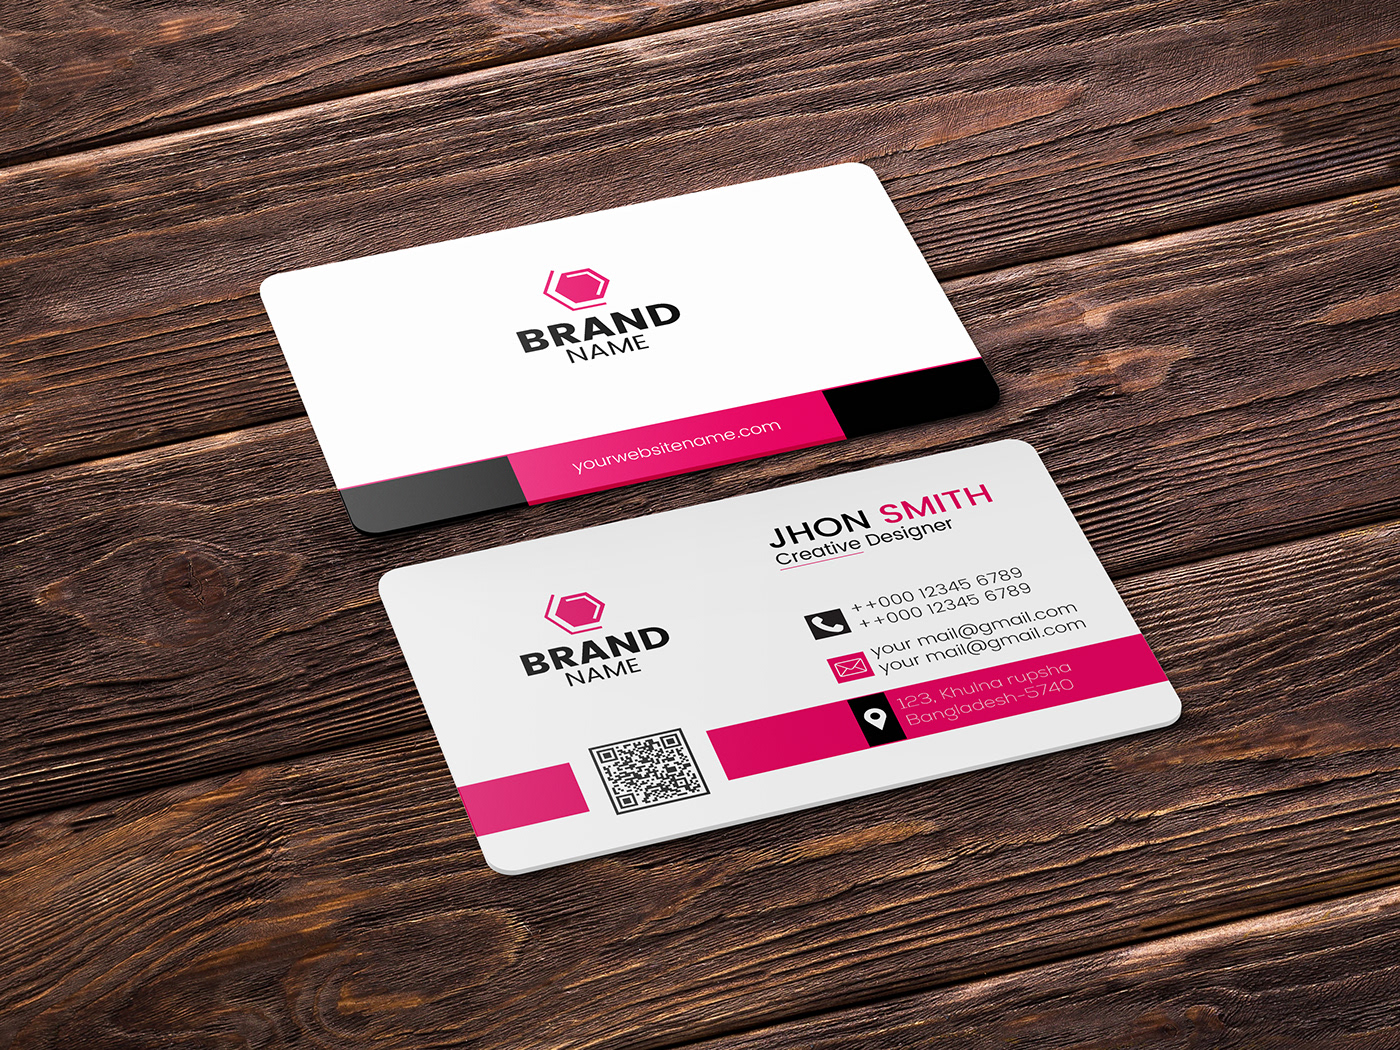 businesscard Business card design Corporate Business Card unique business card creative business card simple business card best business card Name card visiting card visiting card design